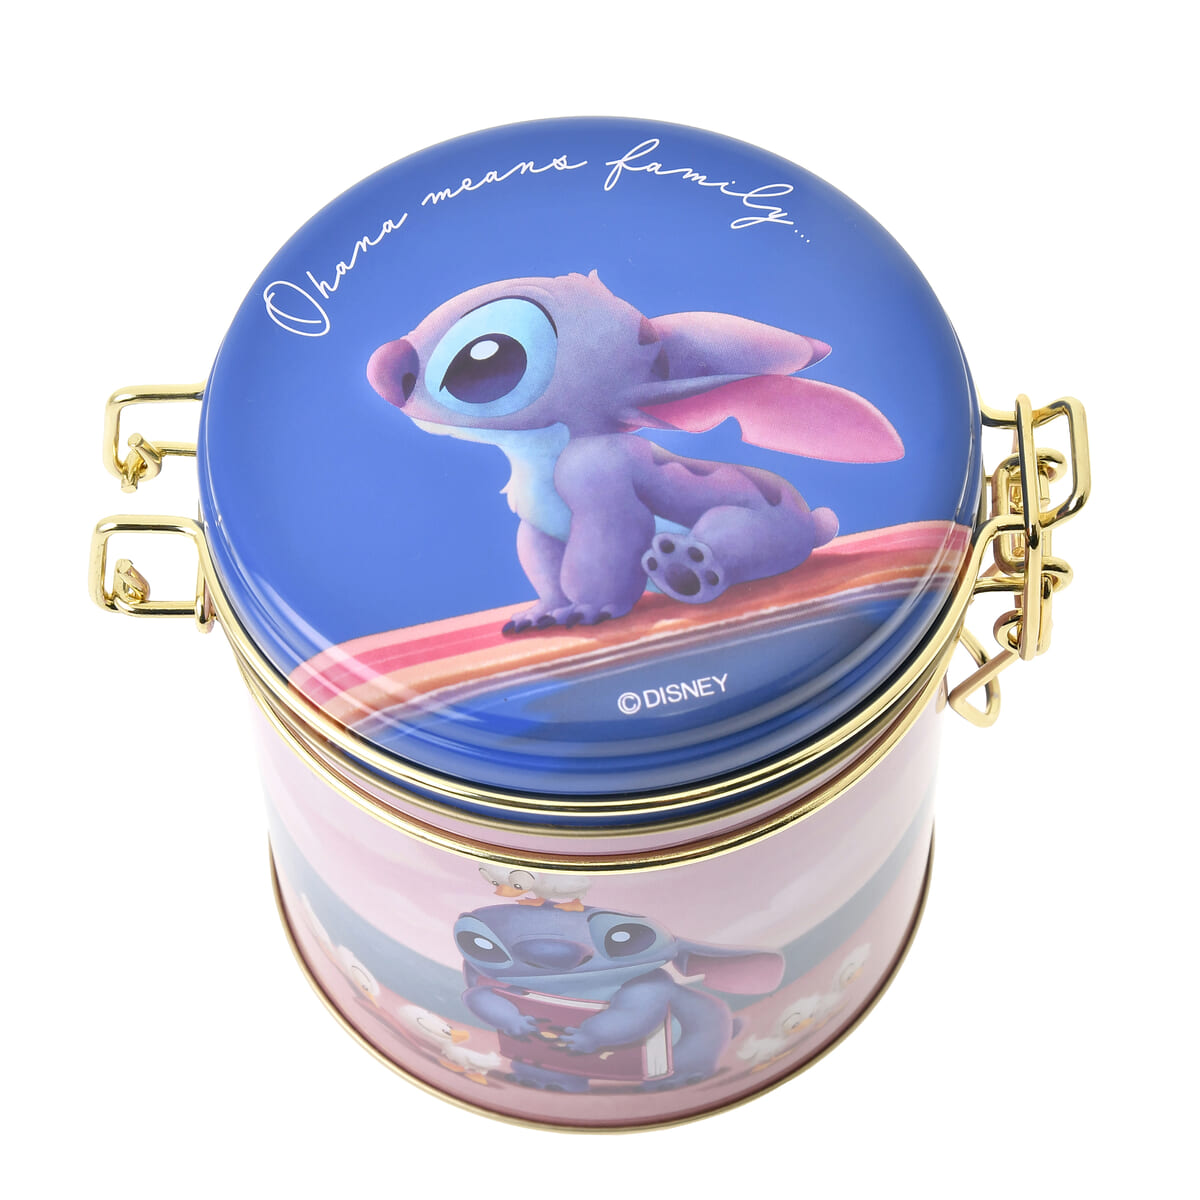 スティッチ クッキー キャニスター缶入り Disney Stitch Day Collection02